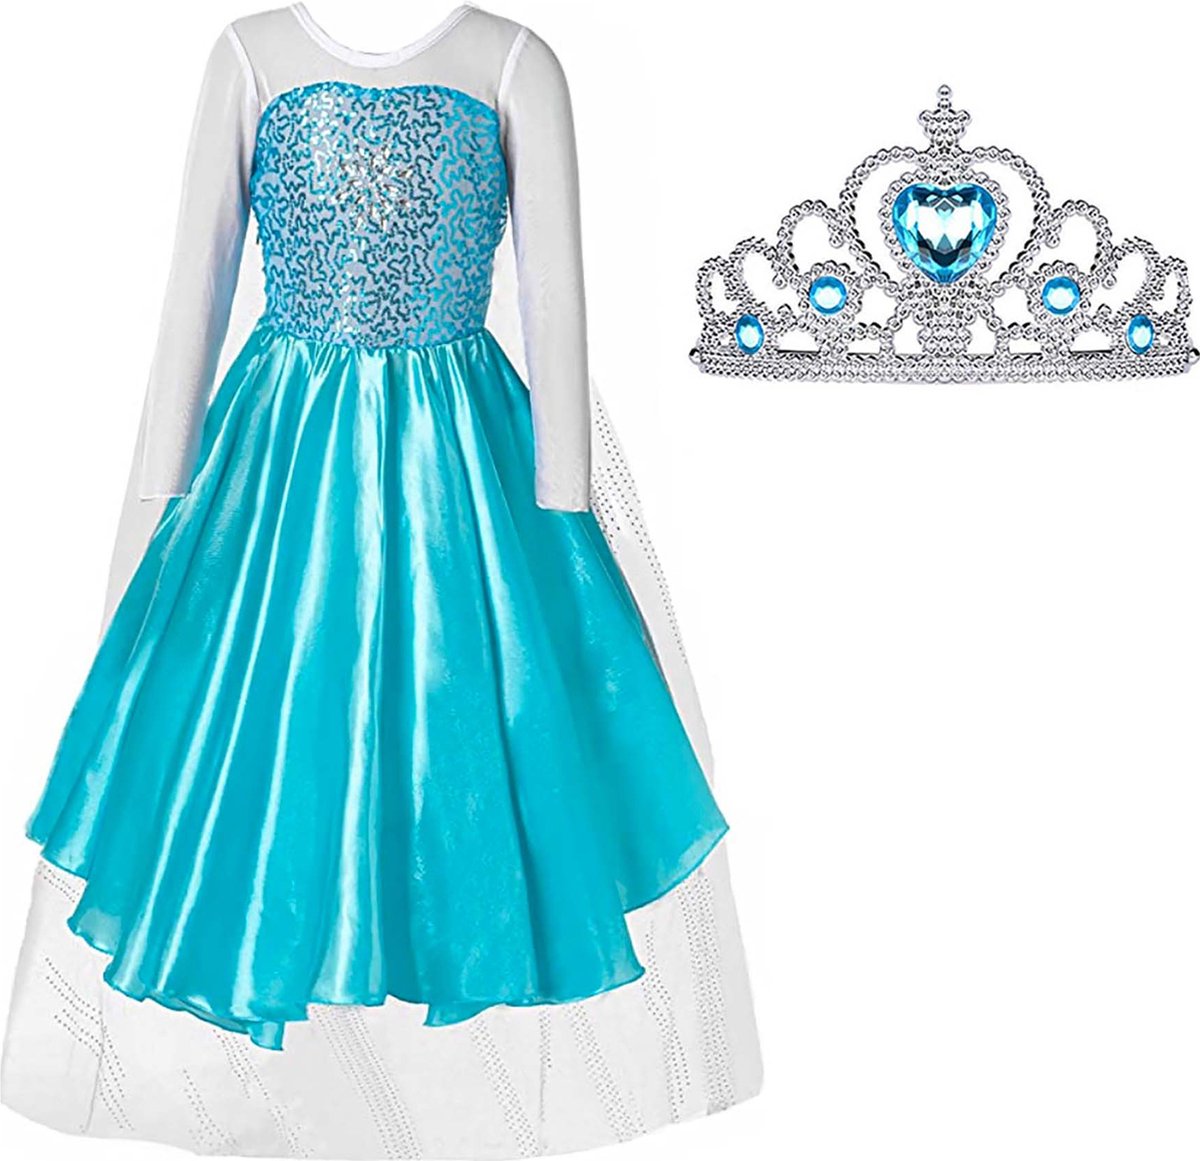 Prinsessenjurk meisje - Elsa jurk - Verkleedkleren - Het Betere Merk - Prinsessen Verkleedkleding - 98/104 (110) - Kroon - Cadeau meisje - Prinsessen speelgoed - Verjaardag meisje - Het Betere Merk